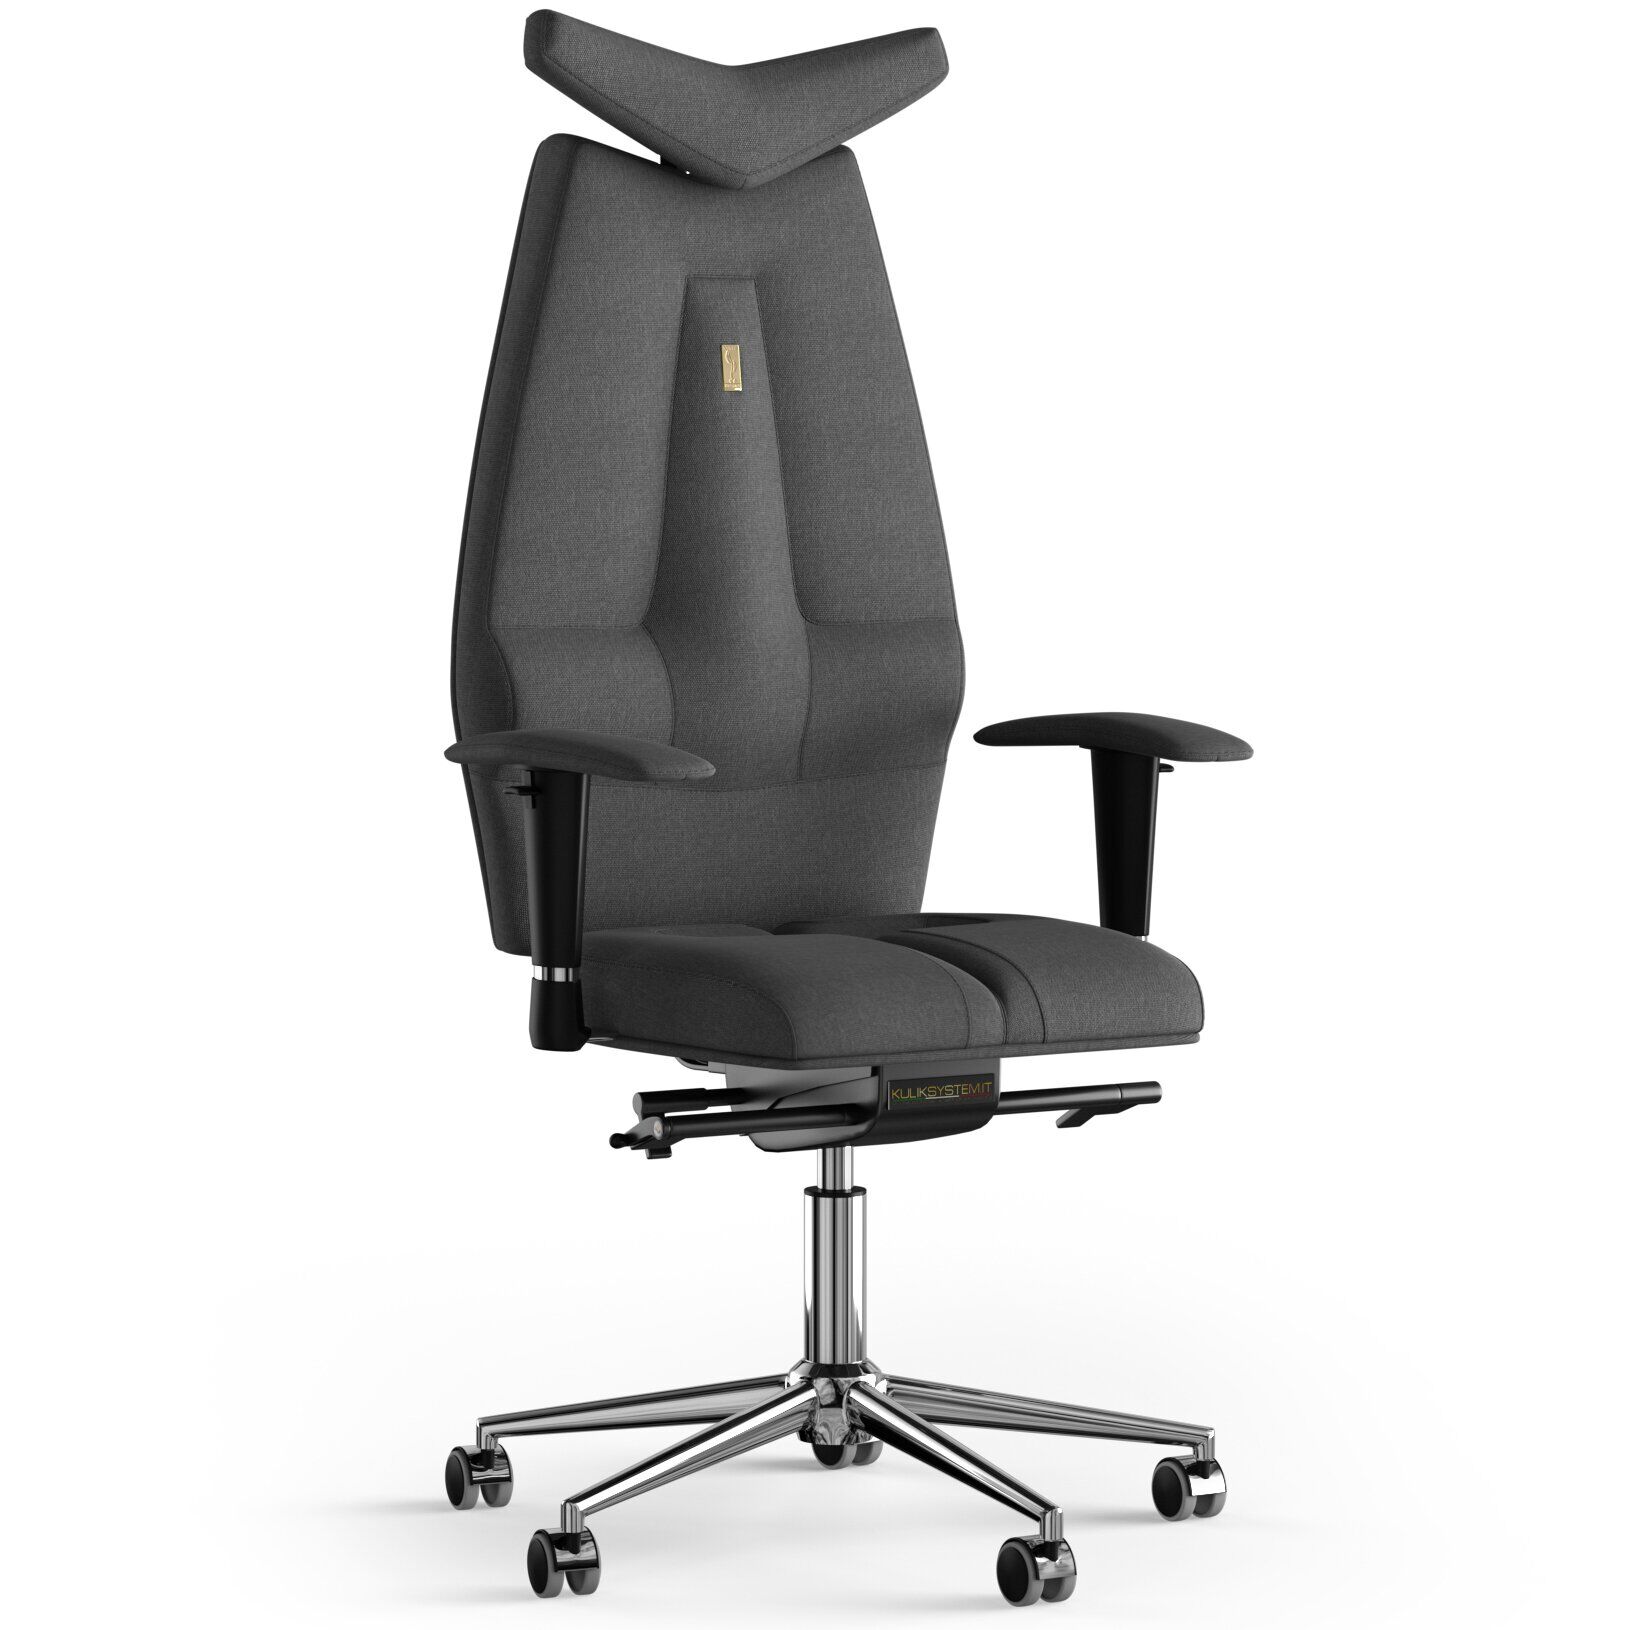 Кресло KULIK SYSTEM JET Ткань с подголовником без строчки Серый (3-901-BS-MC-0506)